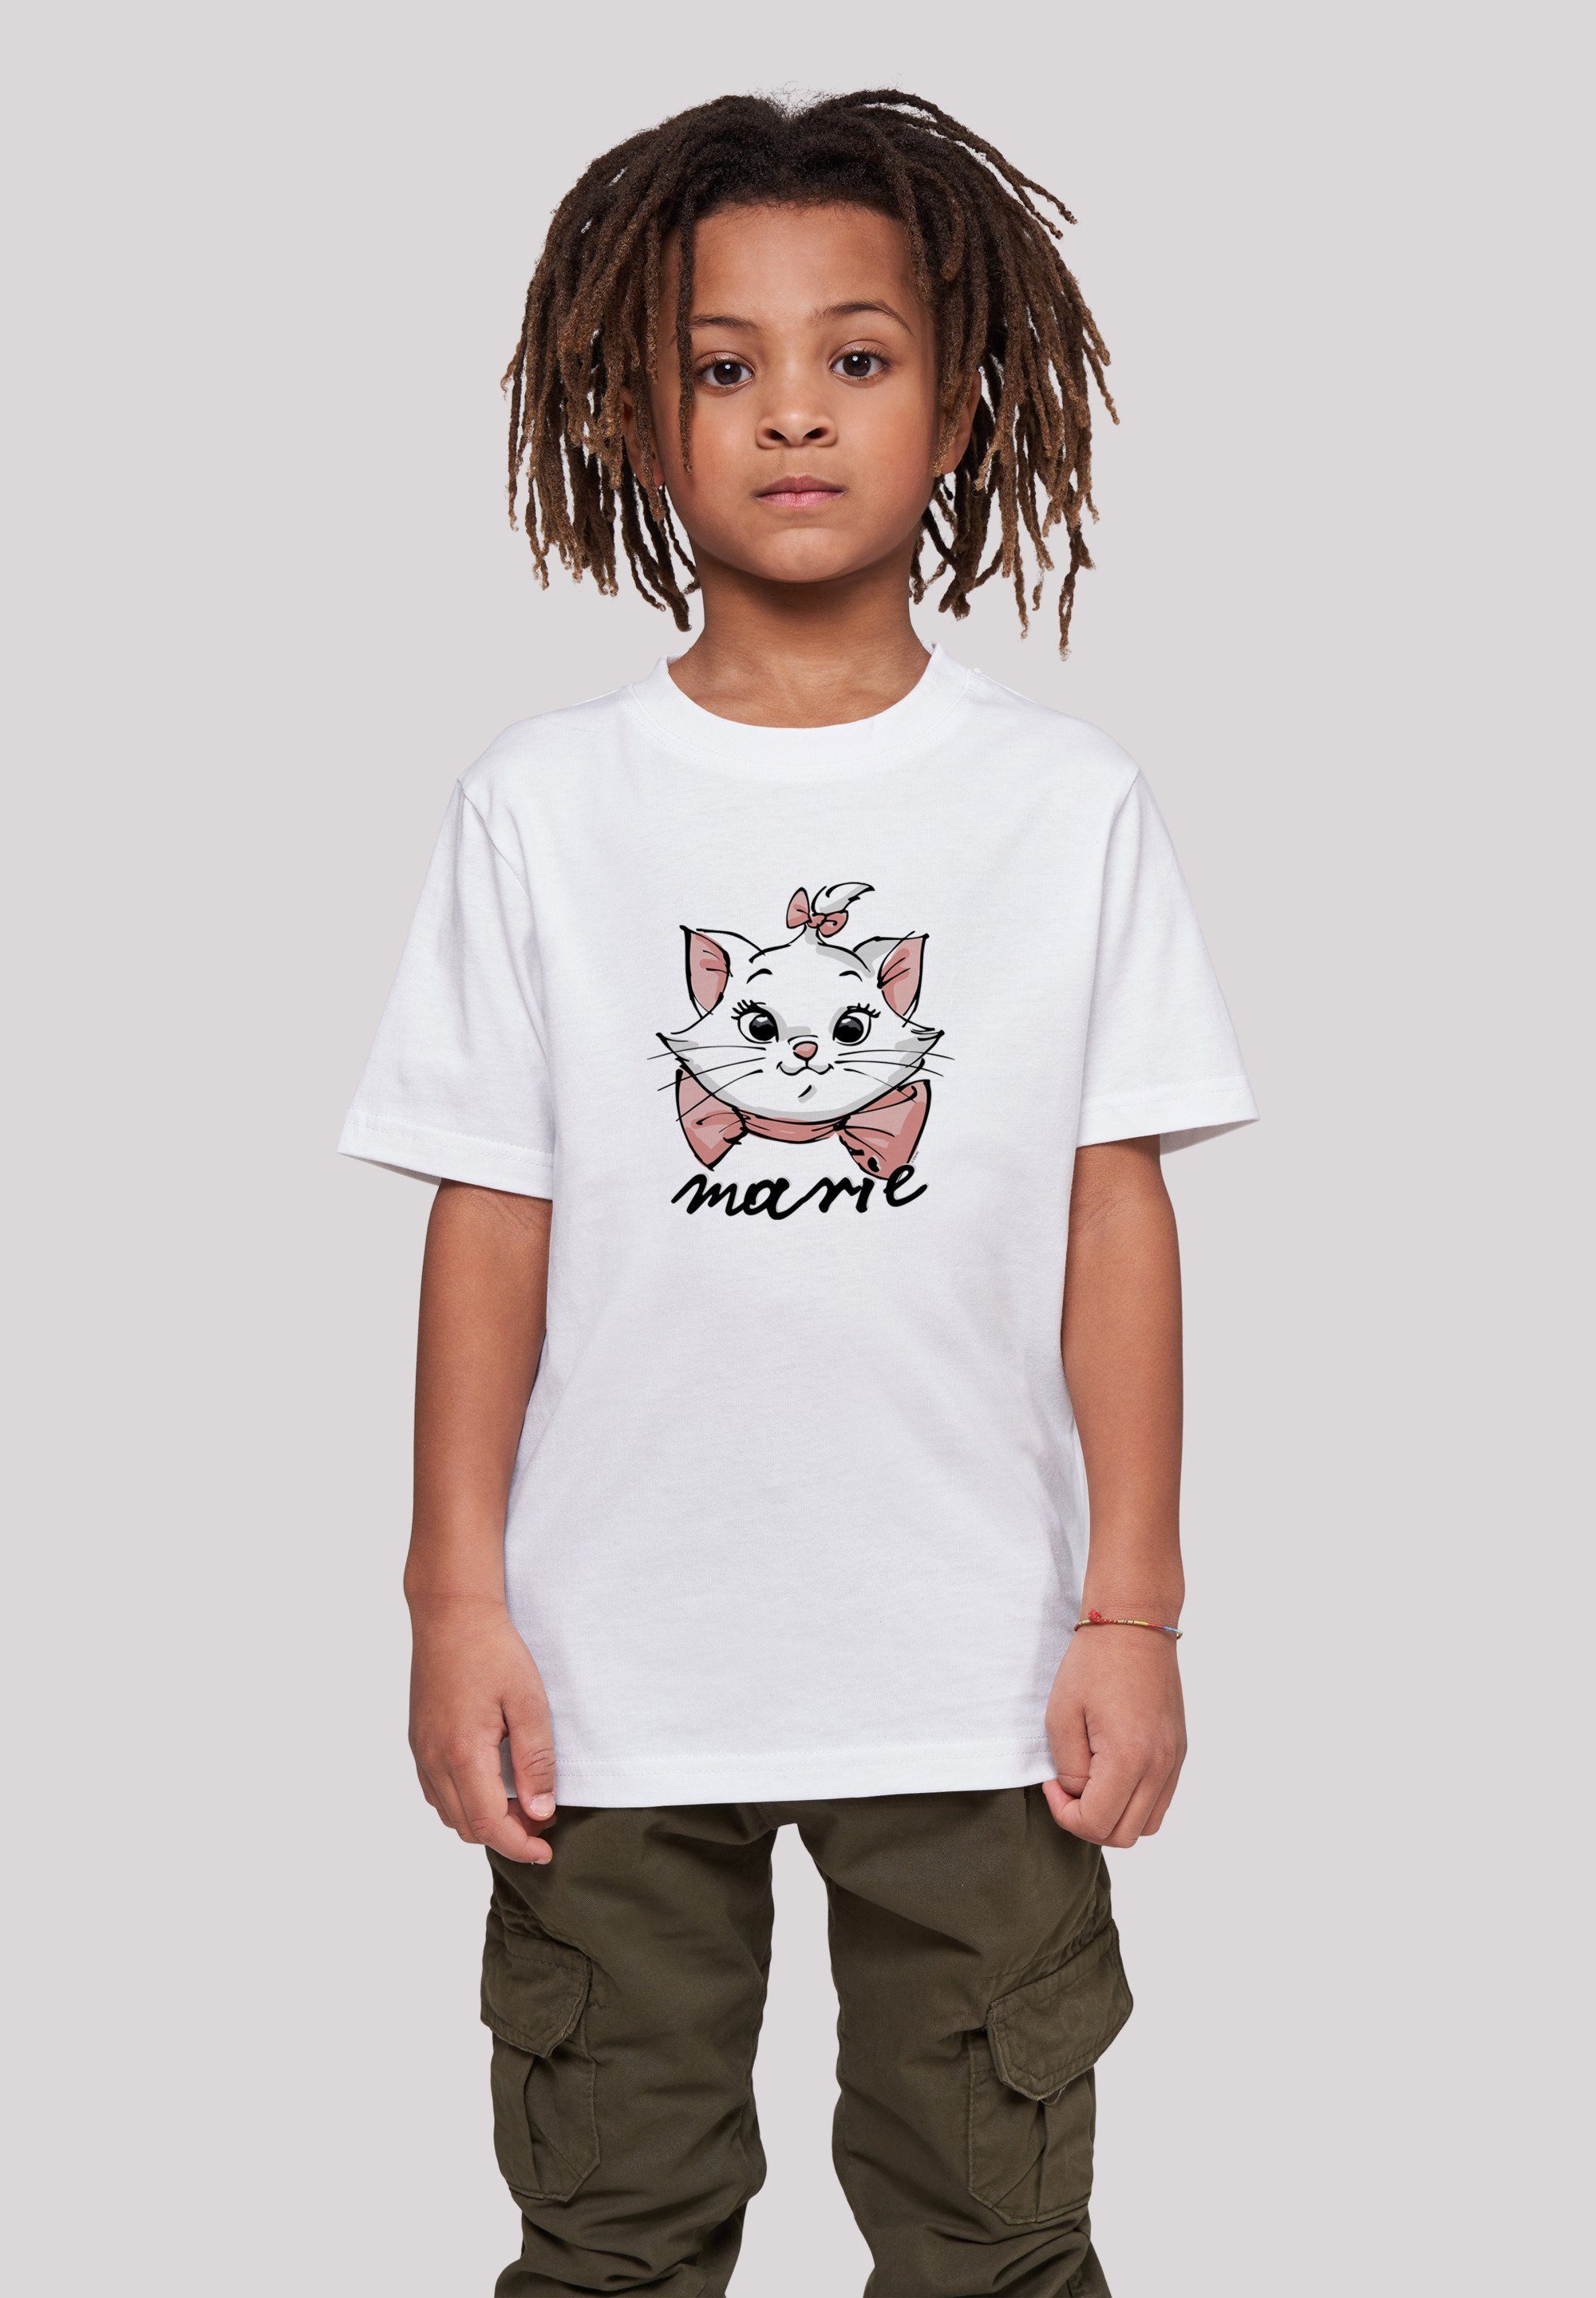 F4NT4STIC T-Shirt Face Aristocats Unisex Sketch Kinder,Premium Marie The Merch,Jungen,Mädchen,Bedruckt Disney